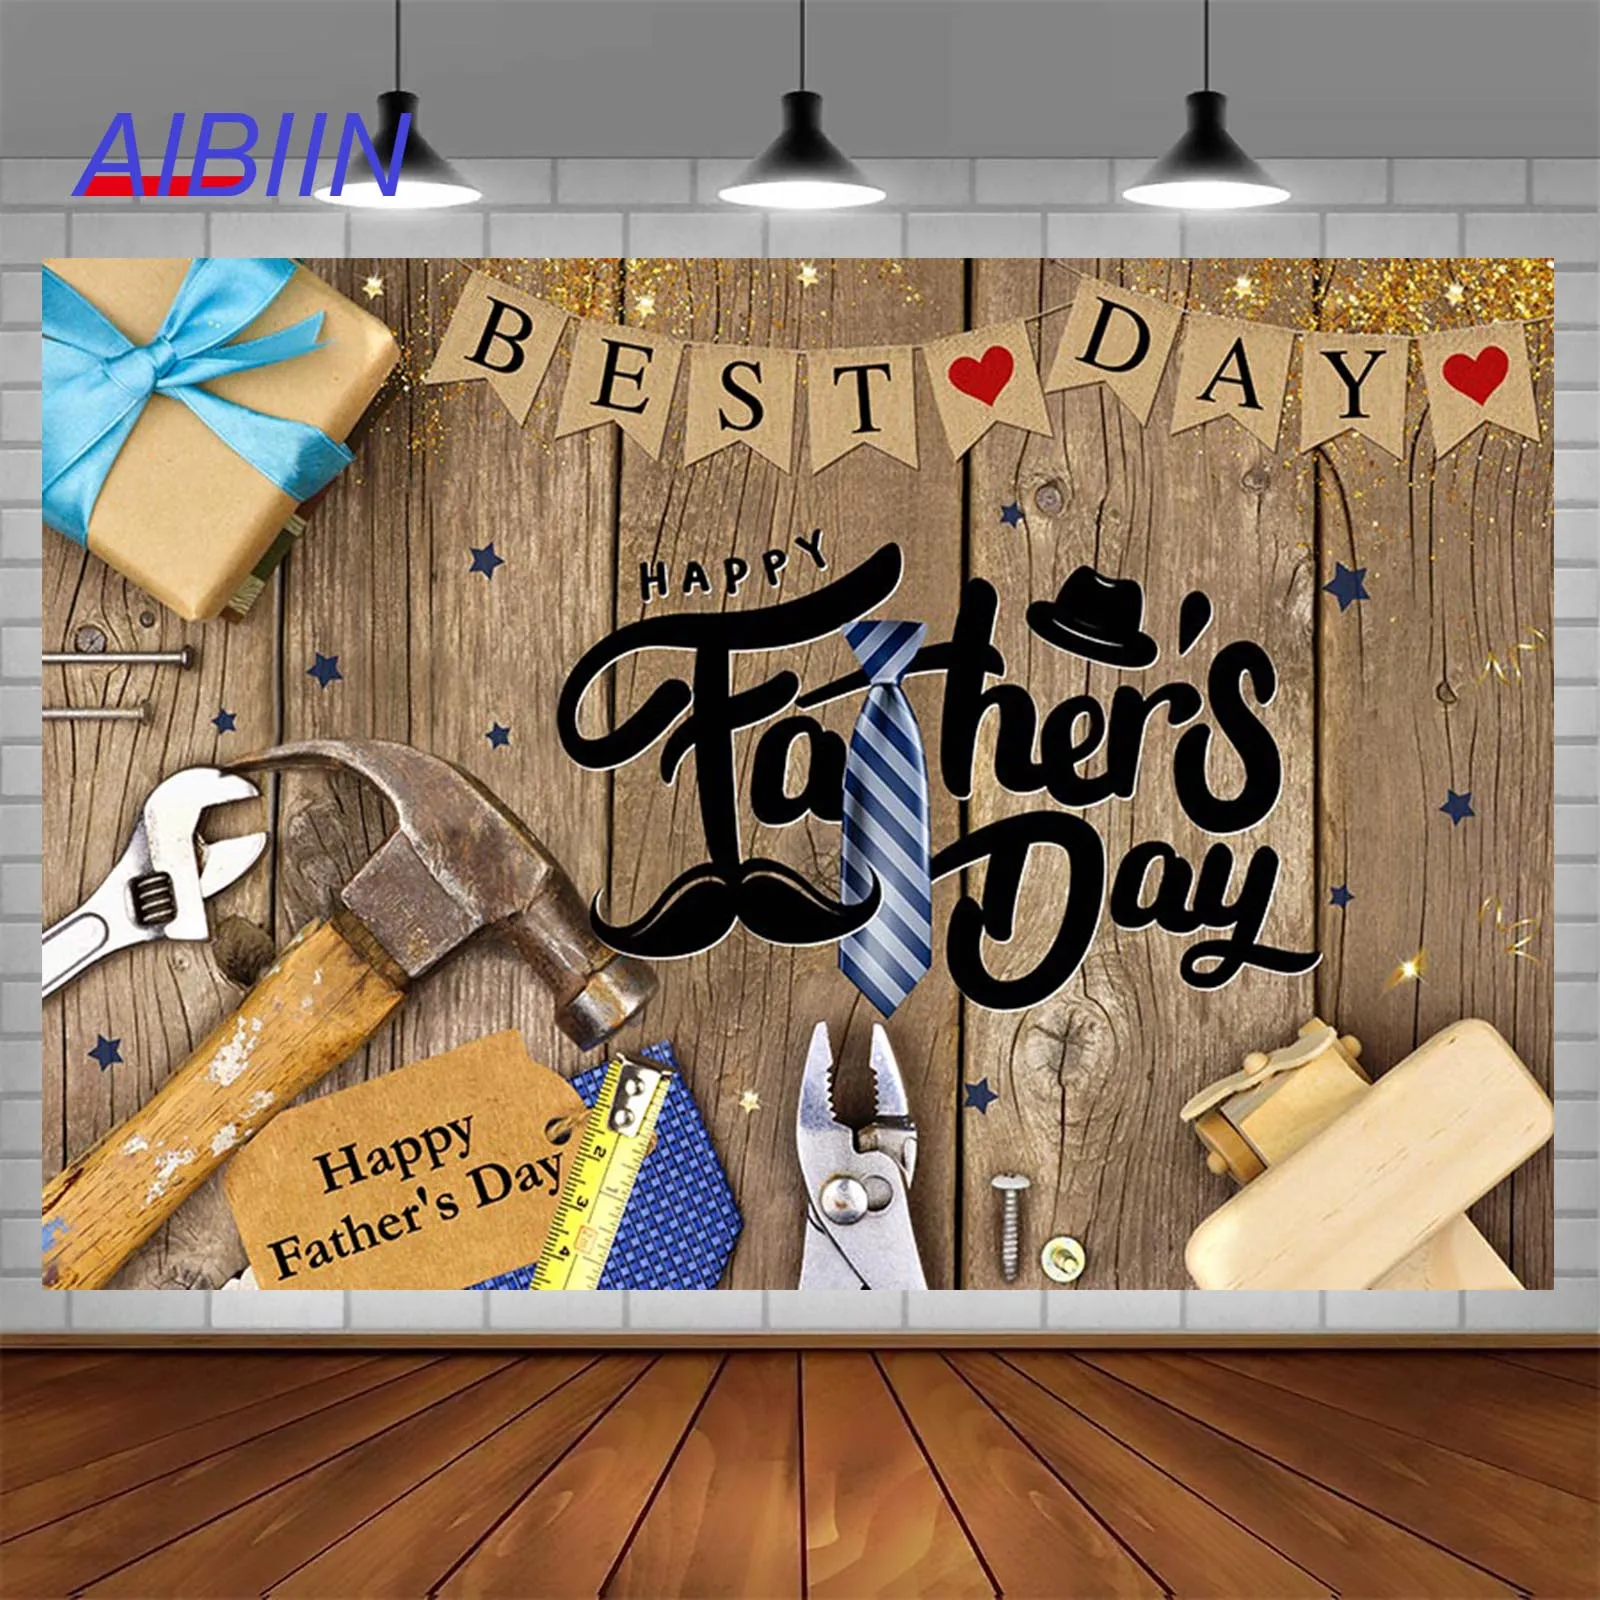 

Фон для фотосъемки счастливого отца инструменты галстук лучший день деревянный фон фотография для отца